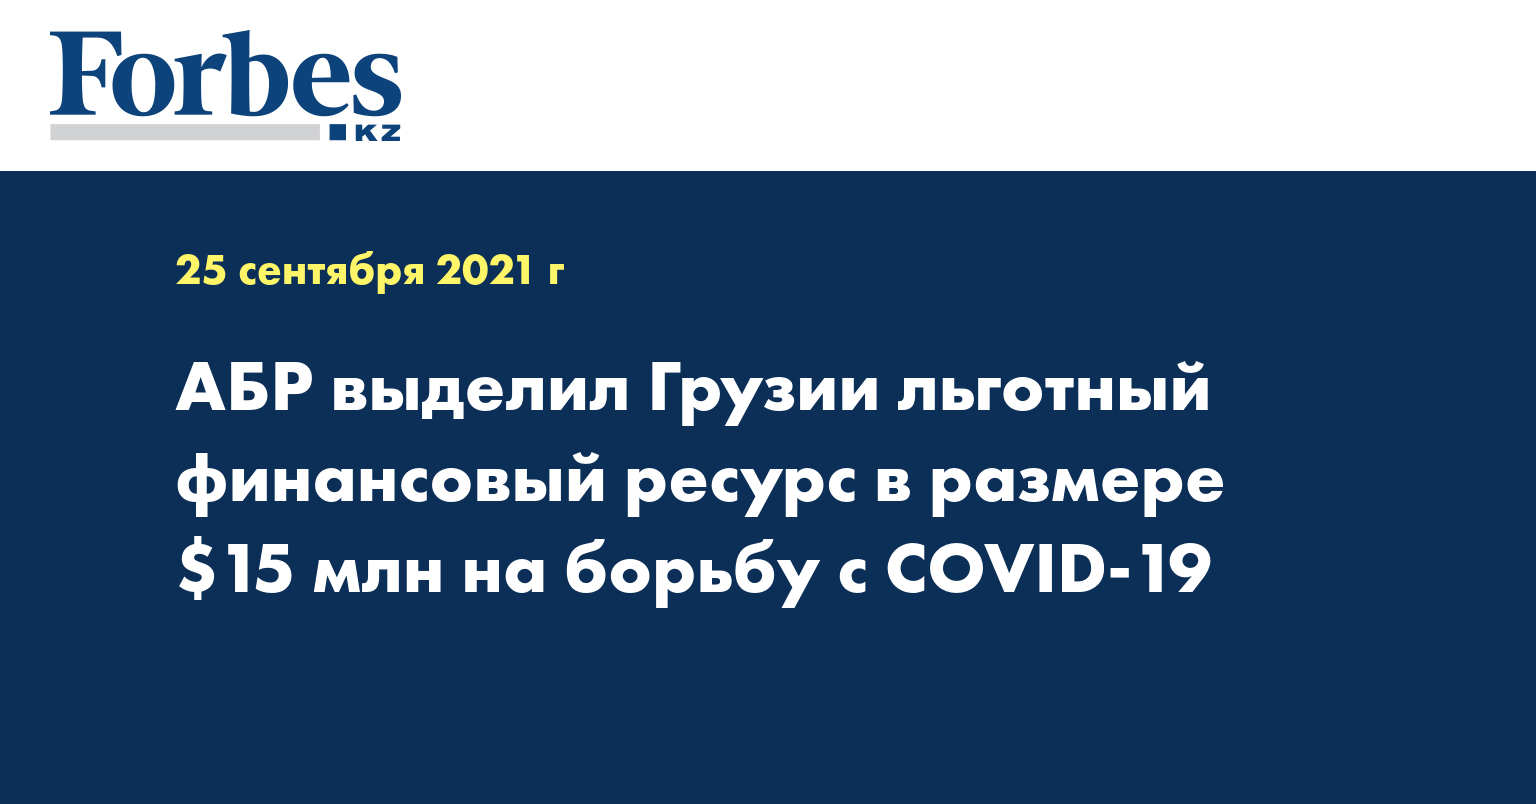 АБР выделил Грузии льготный финансовый ресурс в размере $15 млн на борьбу с COVID-19